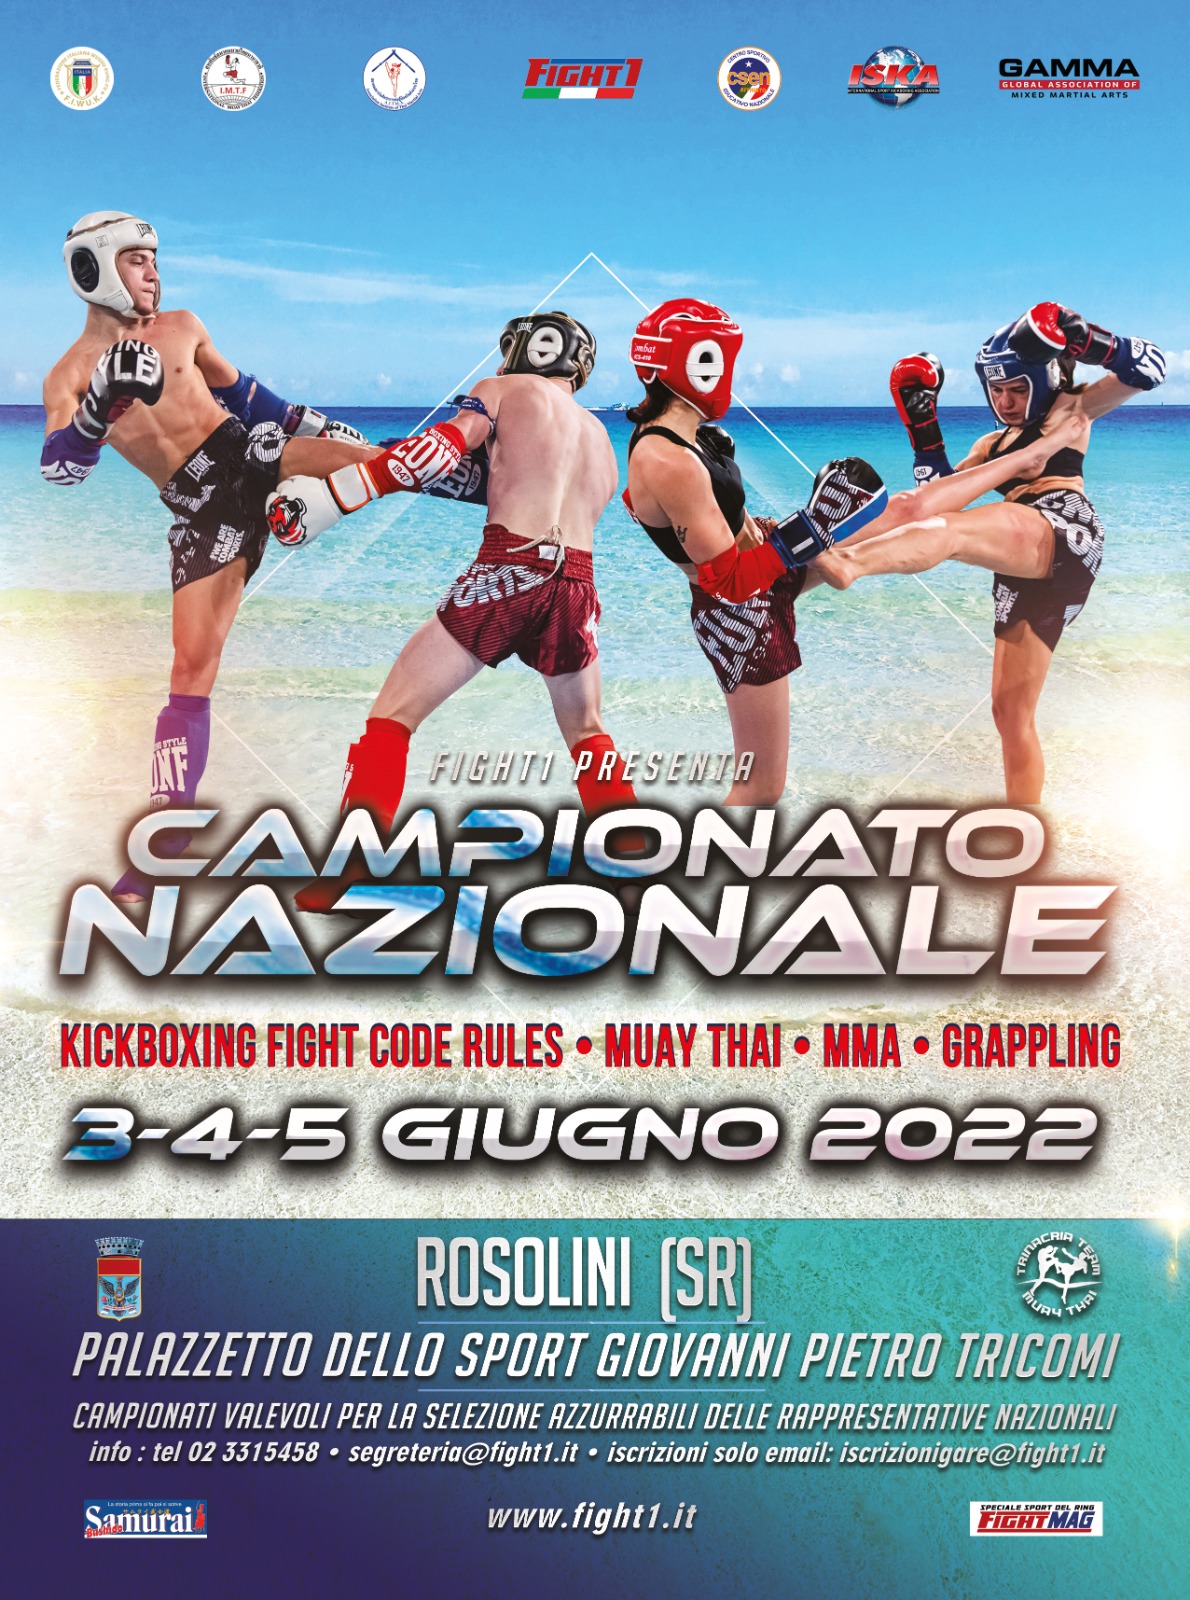 PROGRAMMA CAMPIONATO NAZIONALE FIGHT1  PALATRICOMI DI ROSOLINI 3-4-5 GIUGNO 2022